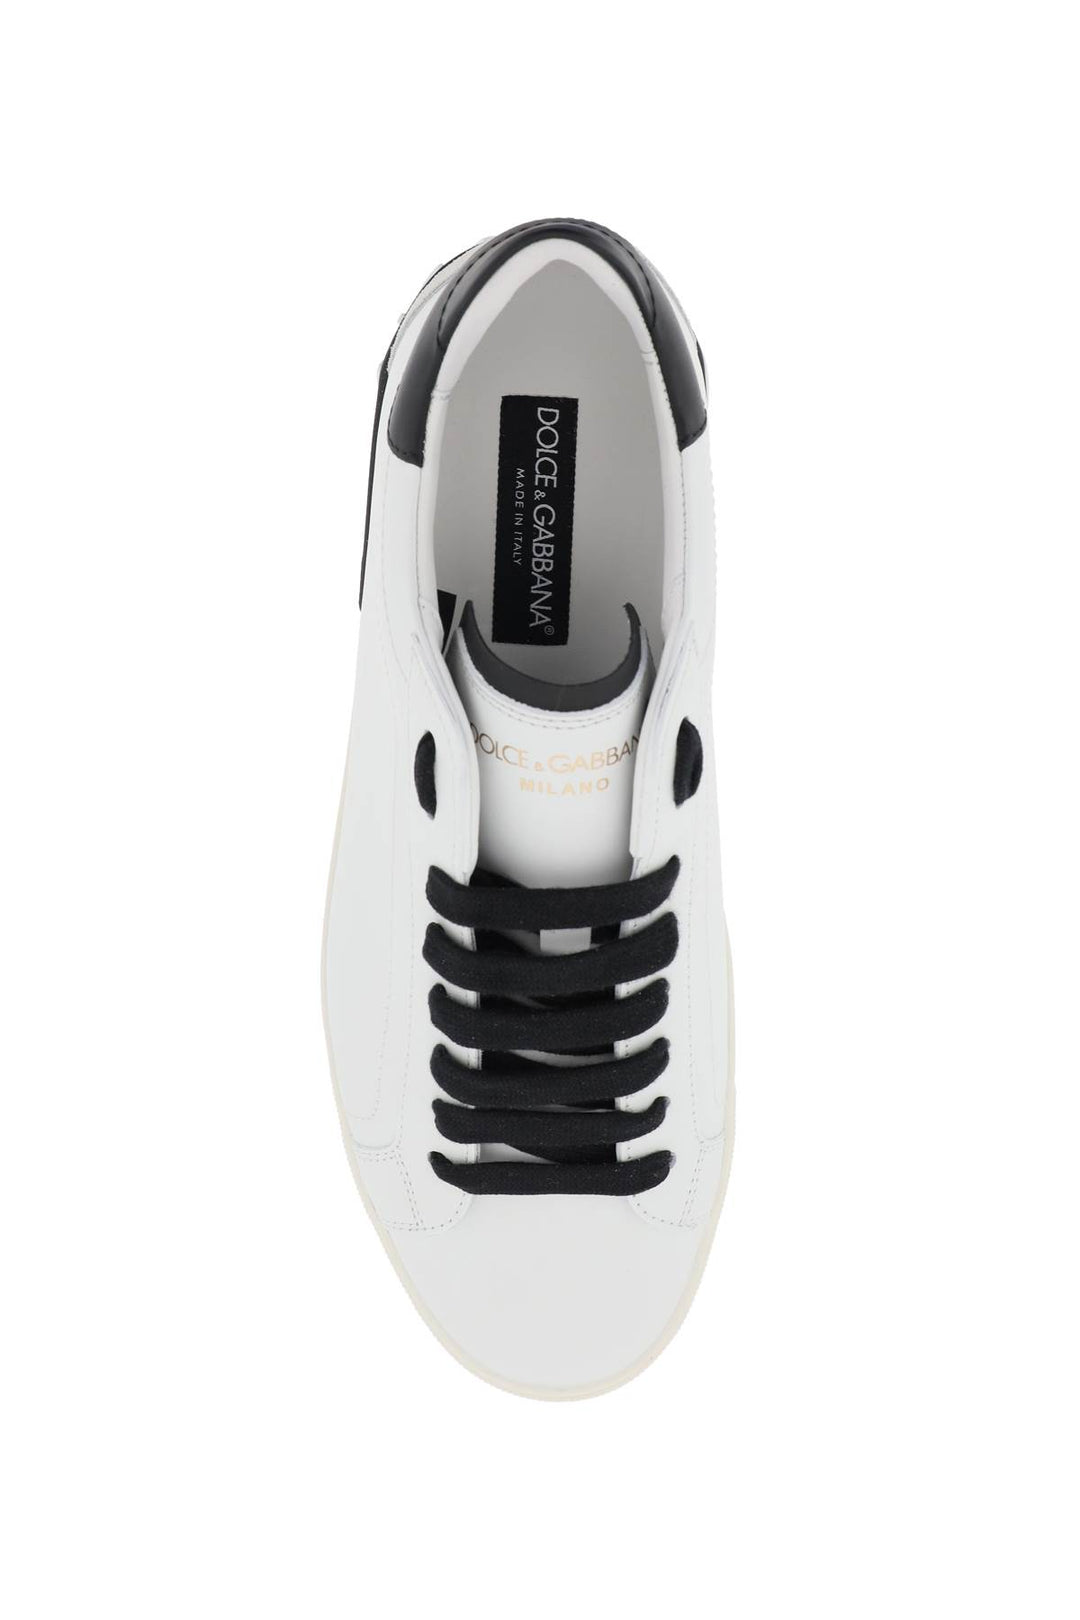 Dolce & Gabbana Nappa Leather Portofino Sneakers   White